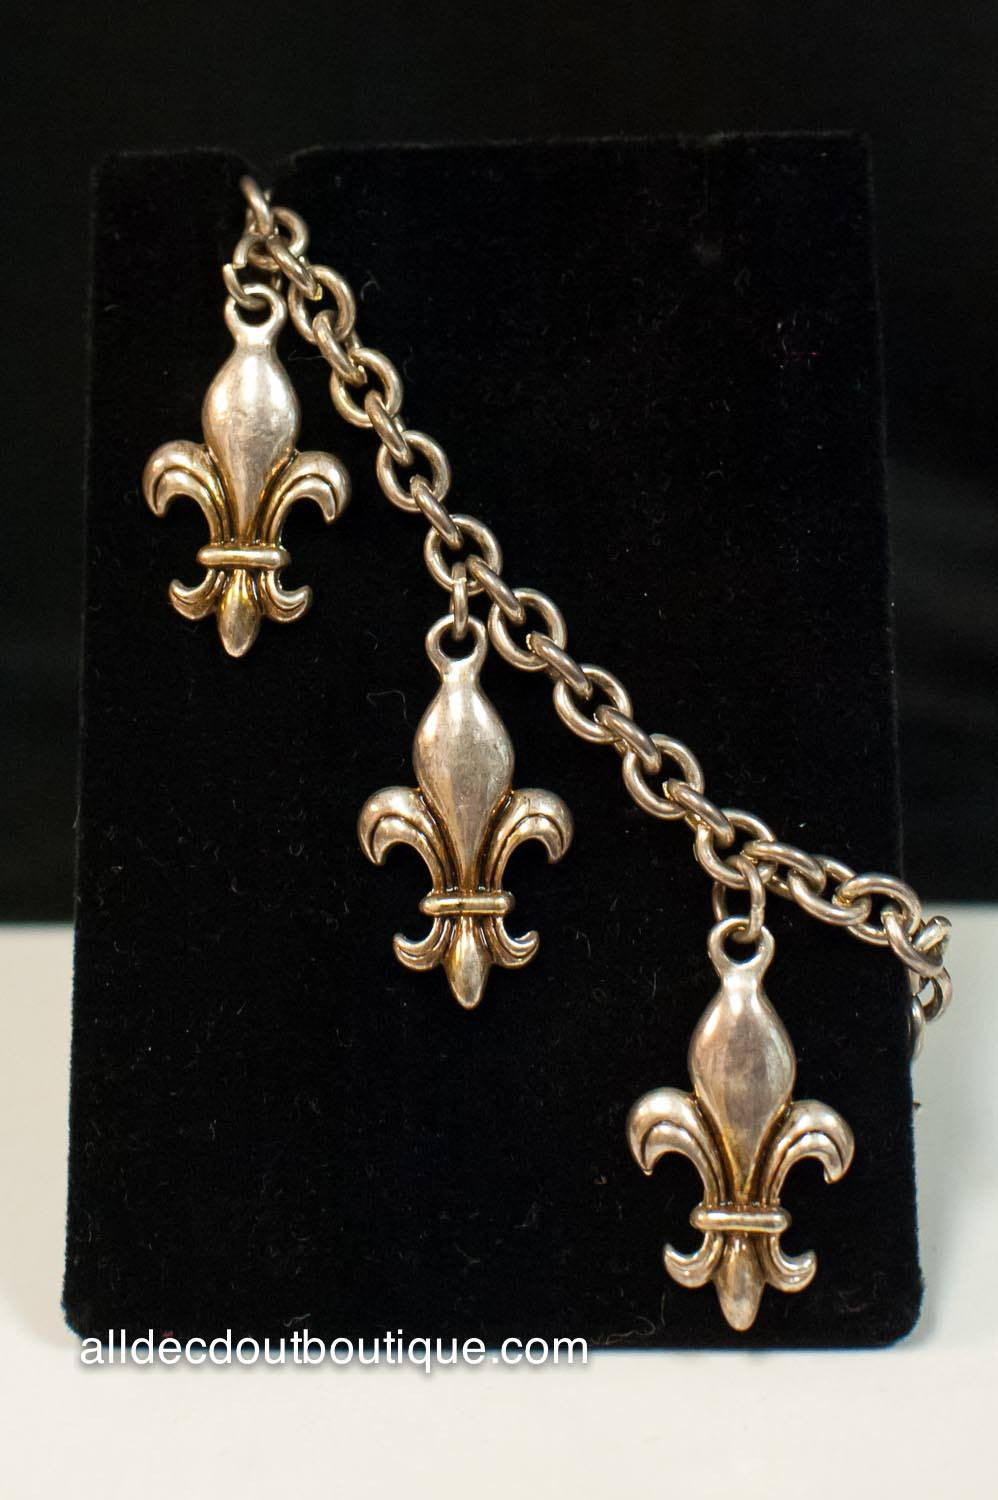 ADO | Silver Metal Fleur De Lis Charm Bracelet with Adjustable Clasp